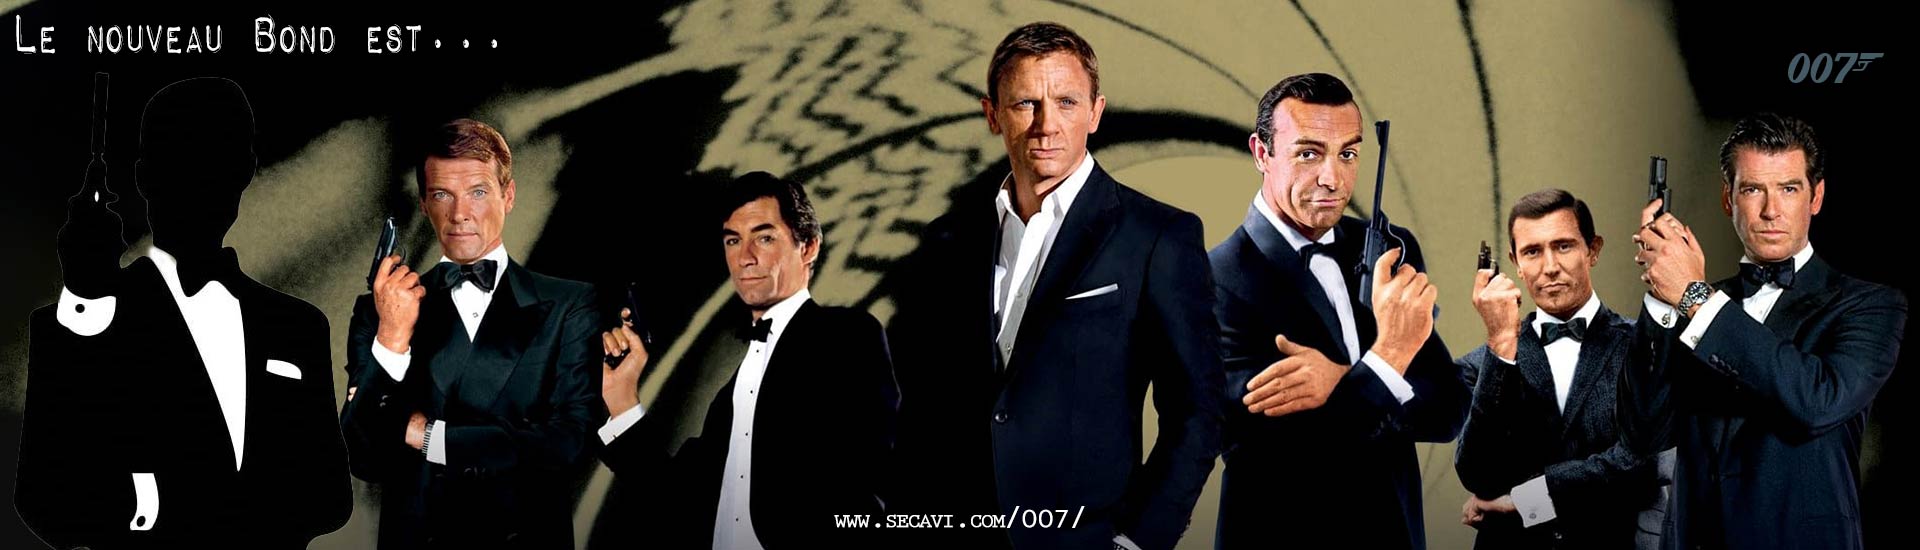 Le nouveau James Bond est...